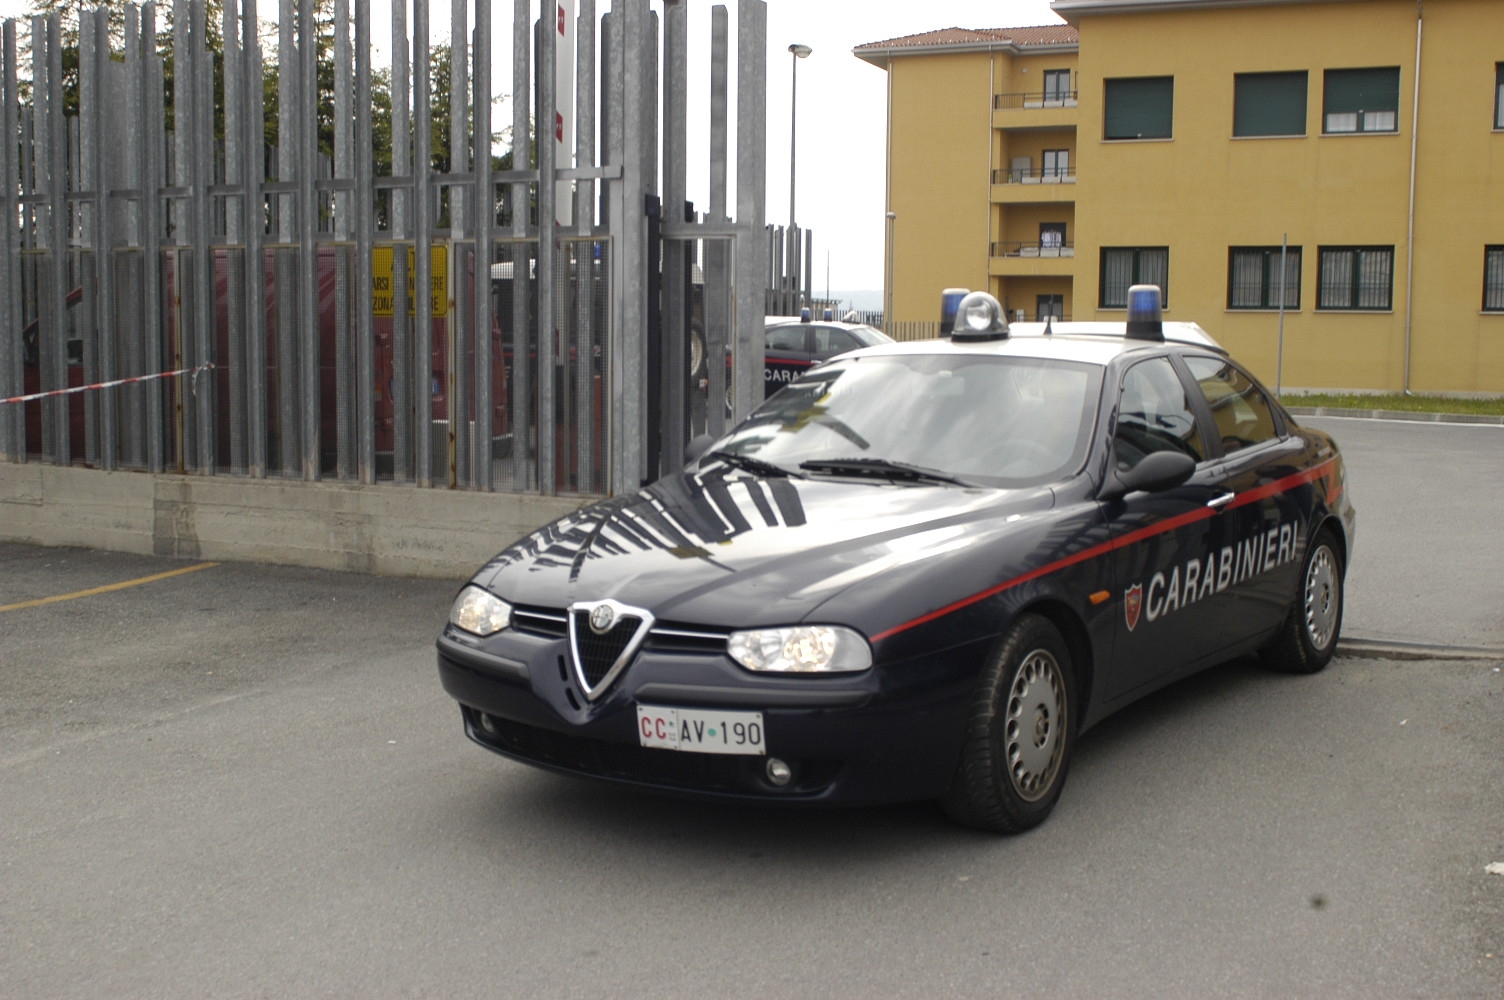 "Carabinieri - Ciak si gira", alle 23.30 su Rai 1: ecco qualche anticipazione...